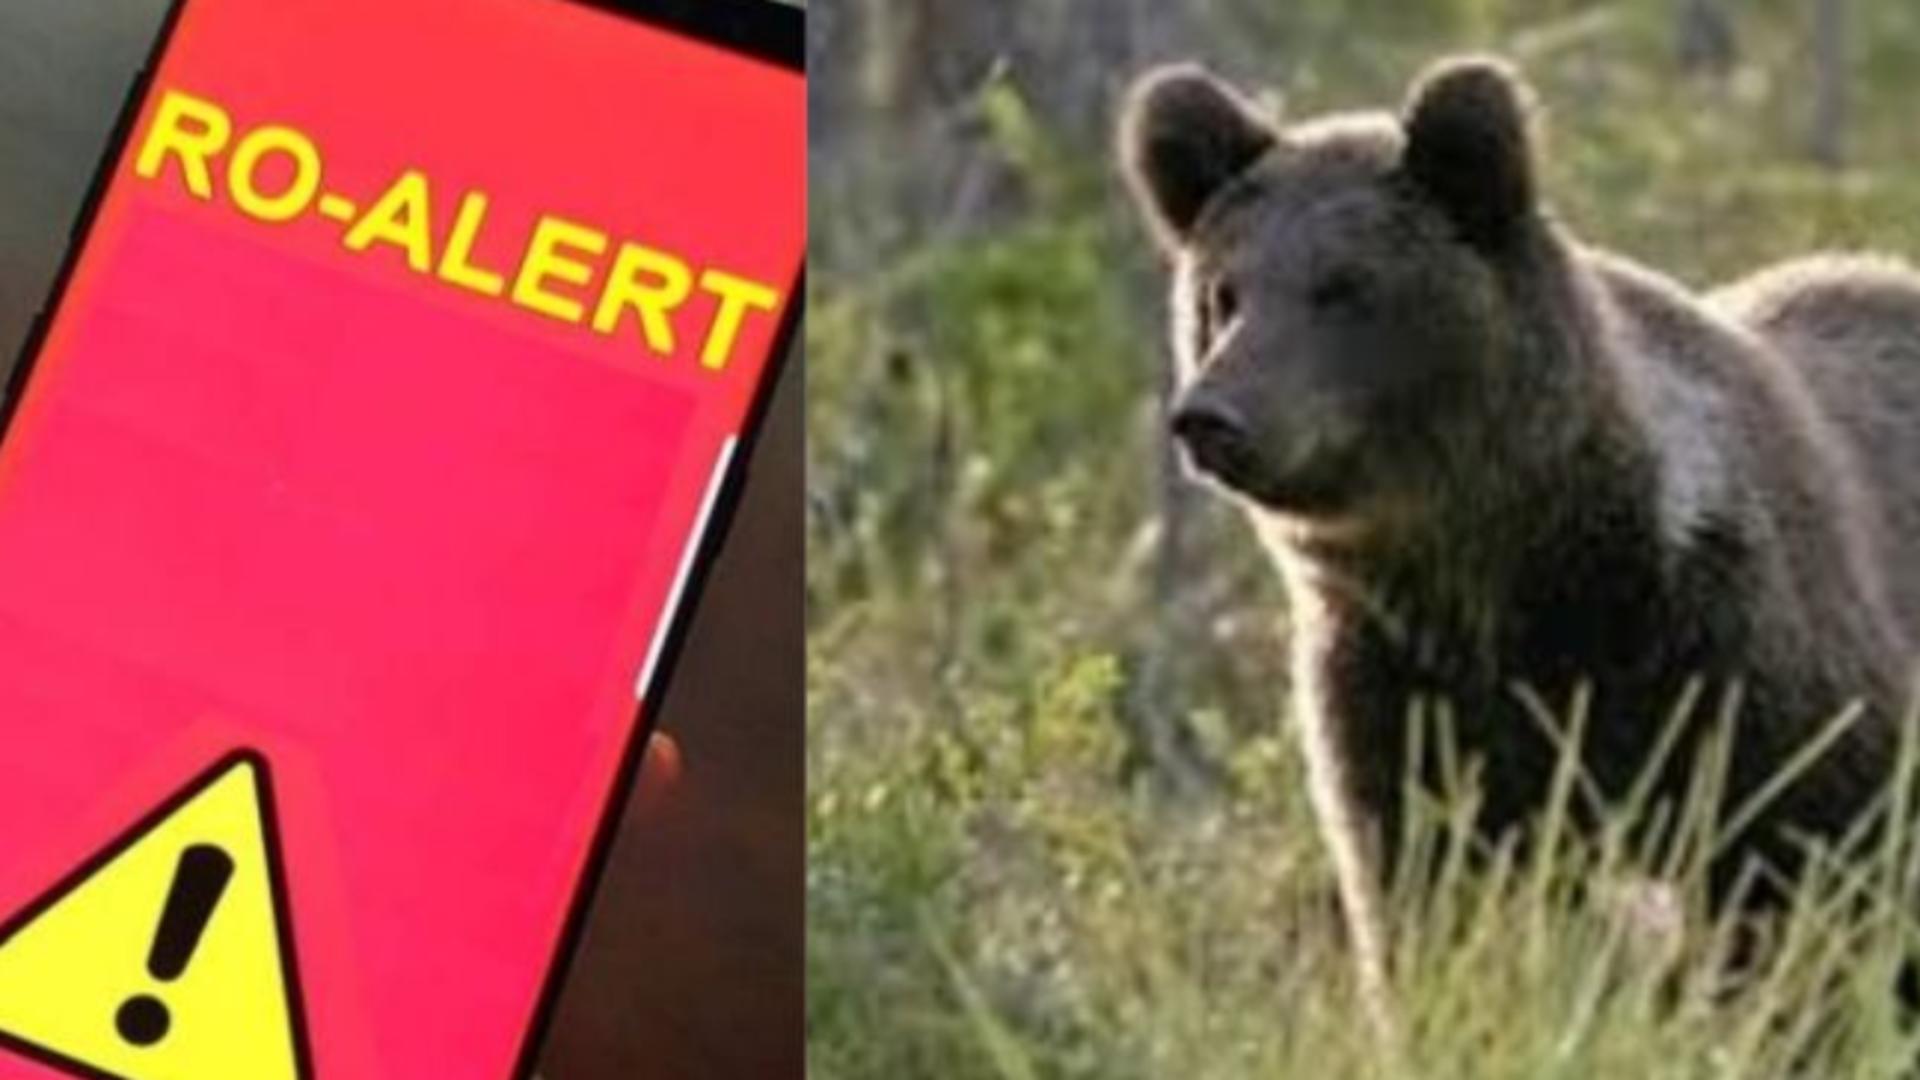 Prezenţa unui urs, semnalată în apropierea autostrăzii Sebeş-Turda. A fost emis RO-Alert